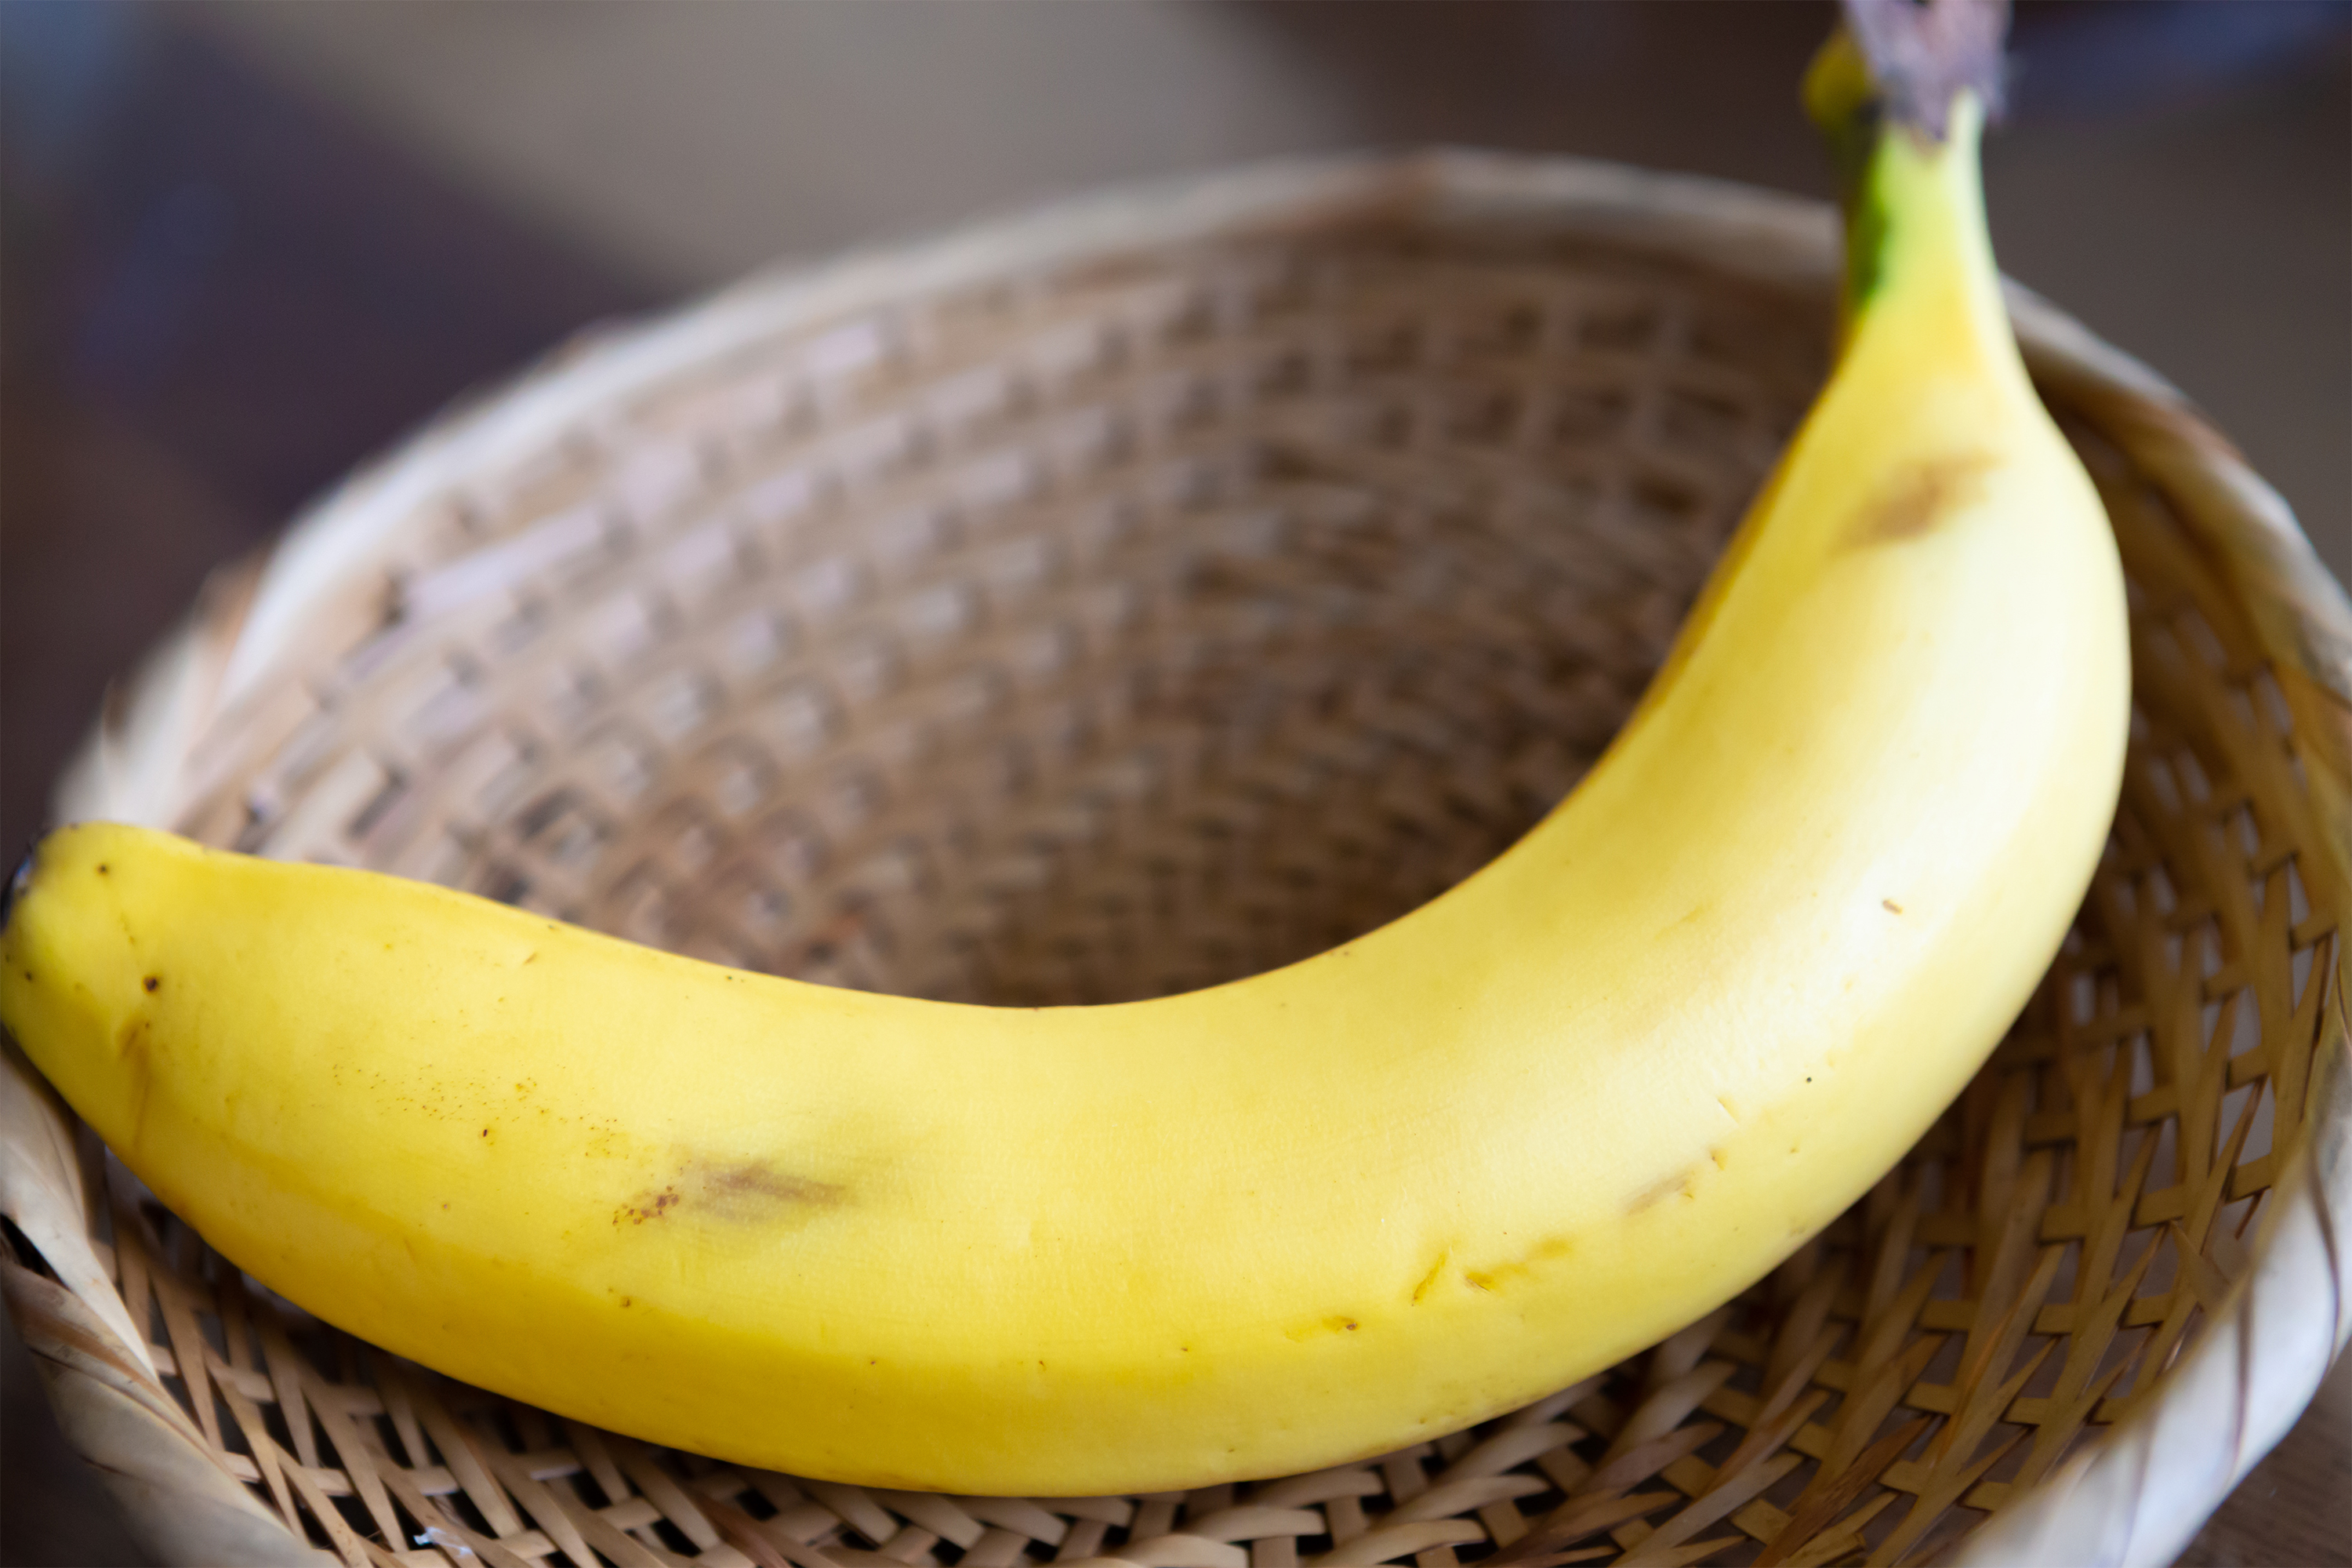 バナナ 1本 無料の高画質フリー写真素材 イメージズラボ